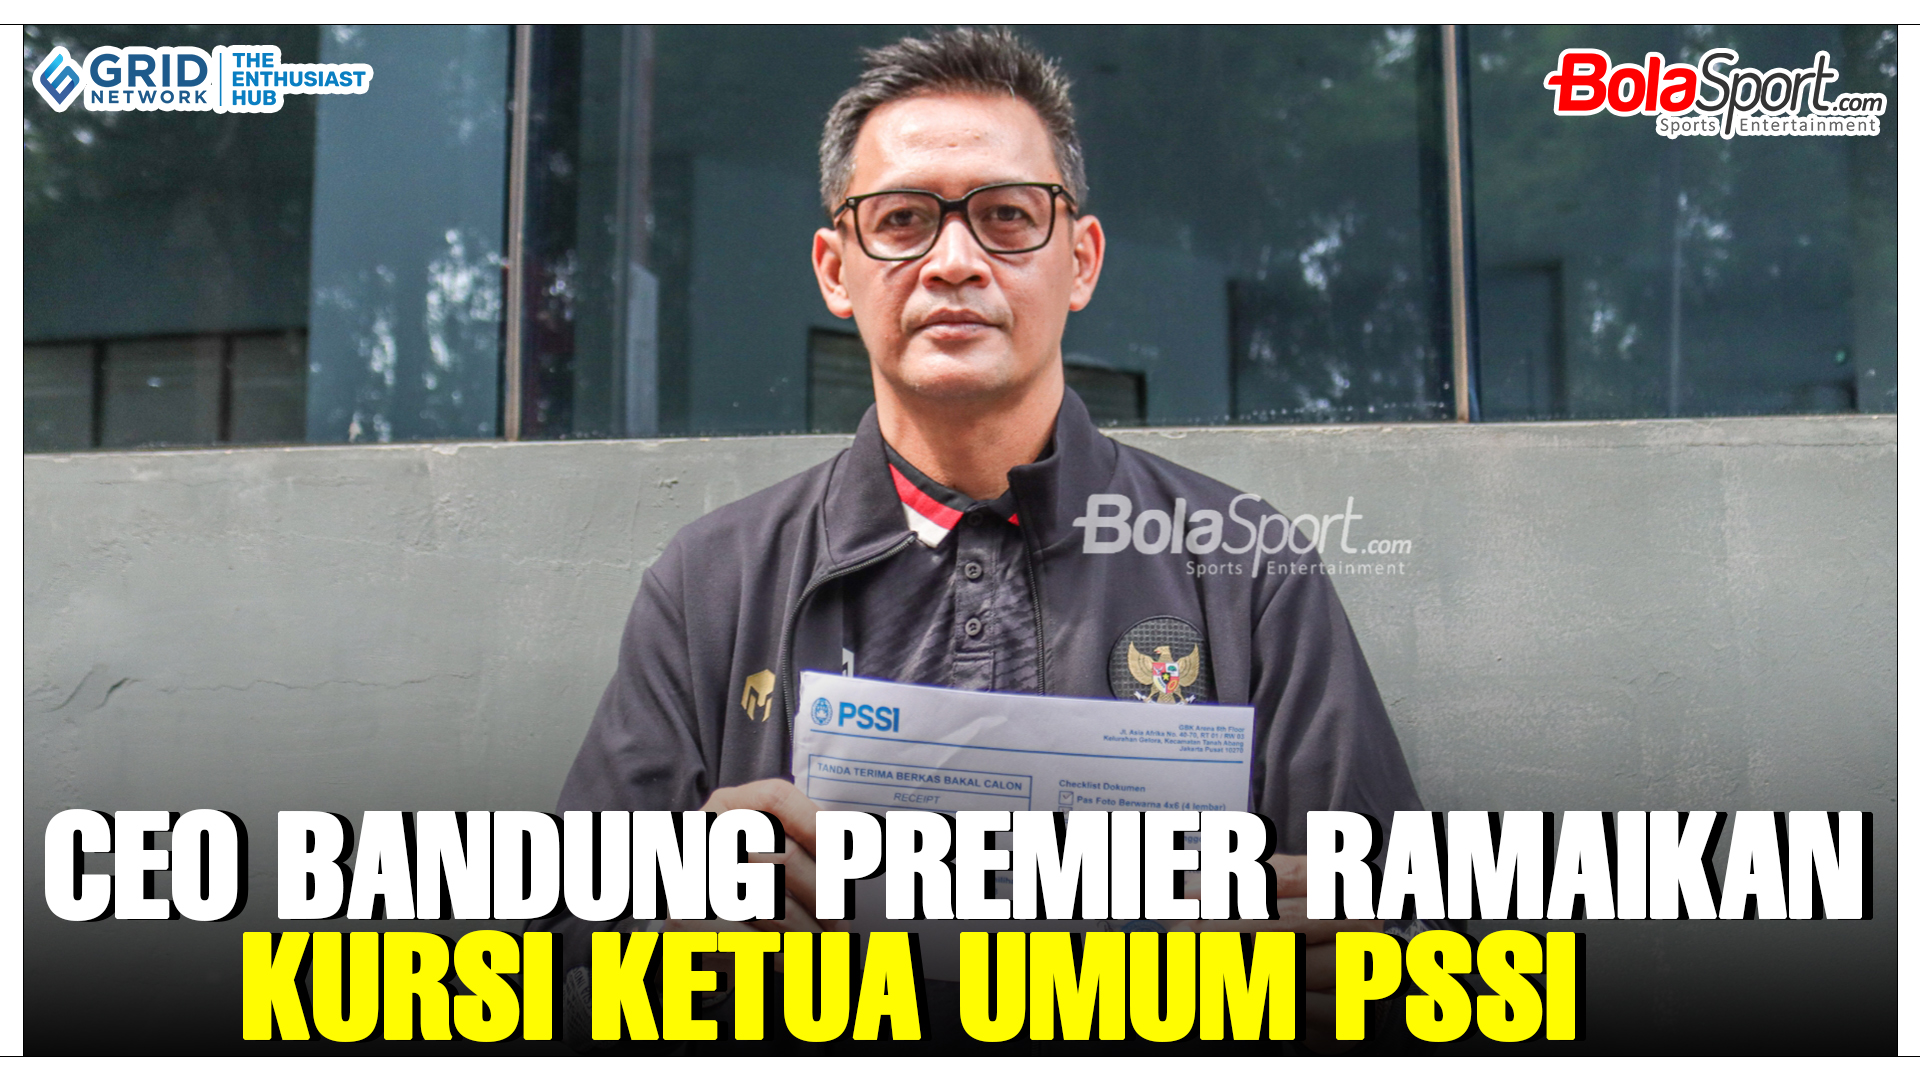 Tiga Calon Ketua Umum PSSI, Terbaru CEO Bandung Premier League Ikut Daftar